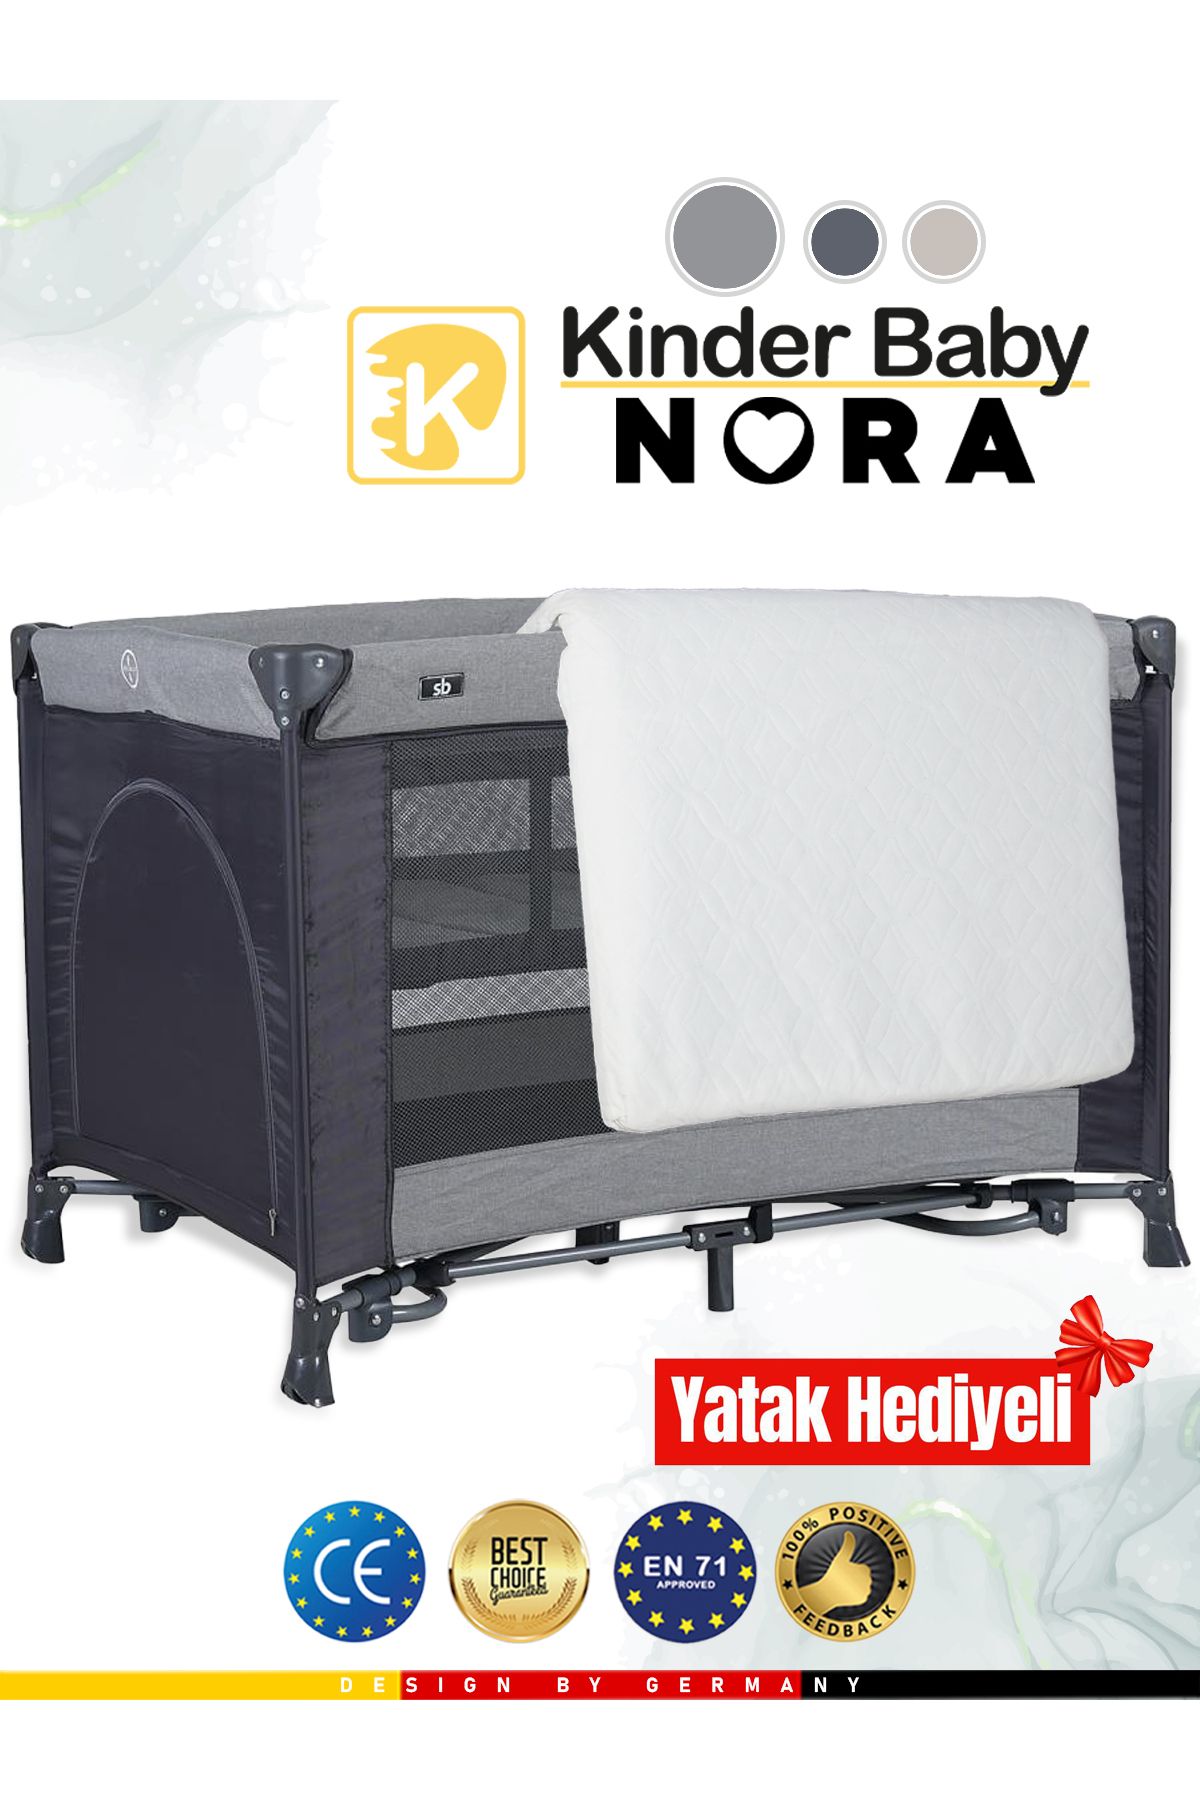 Kinder Baby Nora Park Yatak Oyun Parkı Beşik 70*110 Cm + Yatak Hediyeli